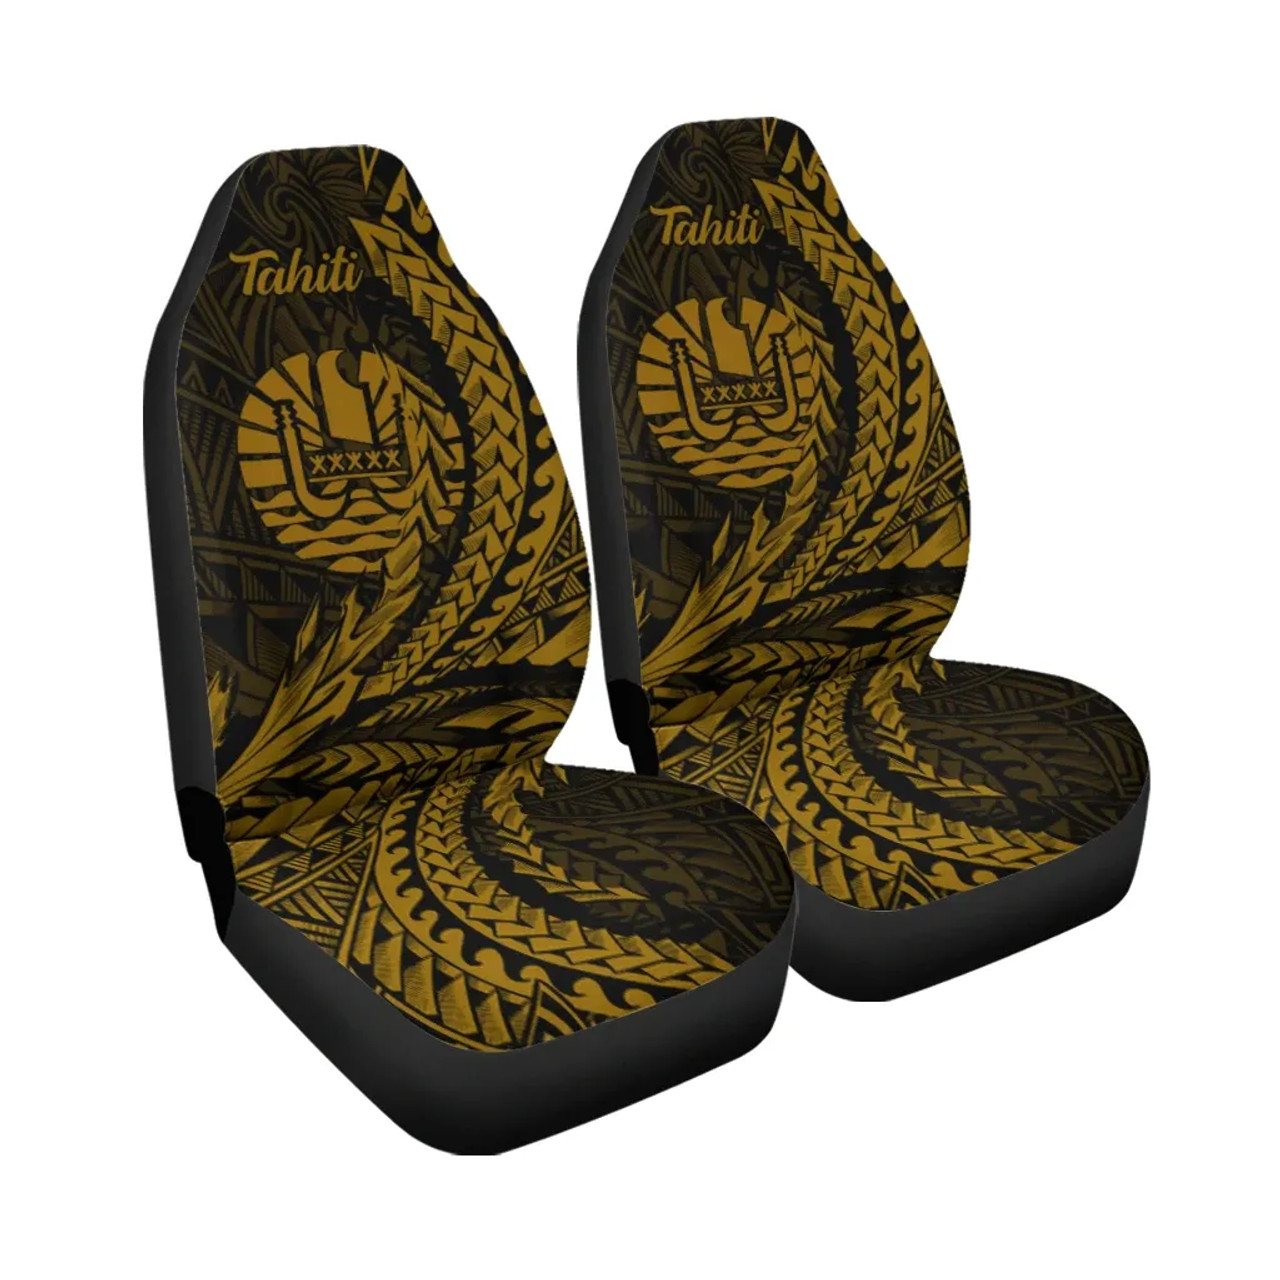 Tahiti Car Seat Cover - Wings Style